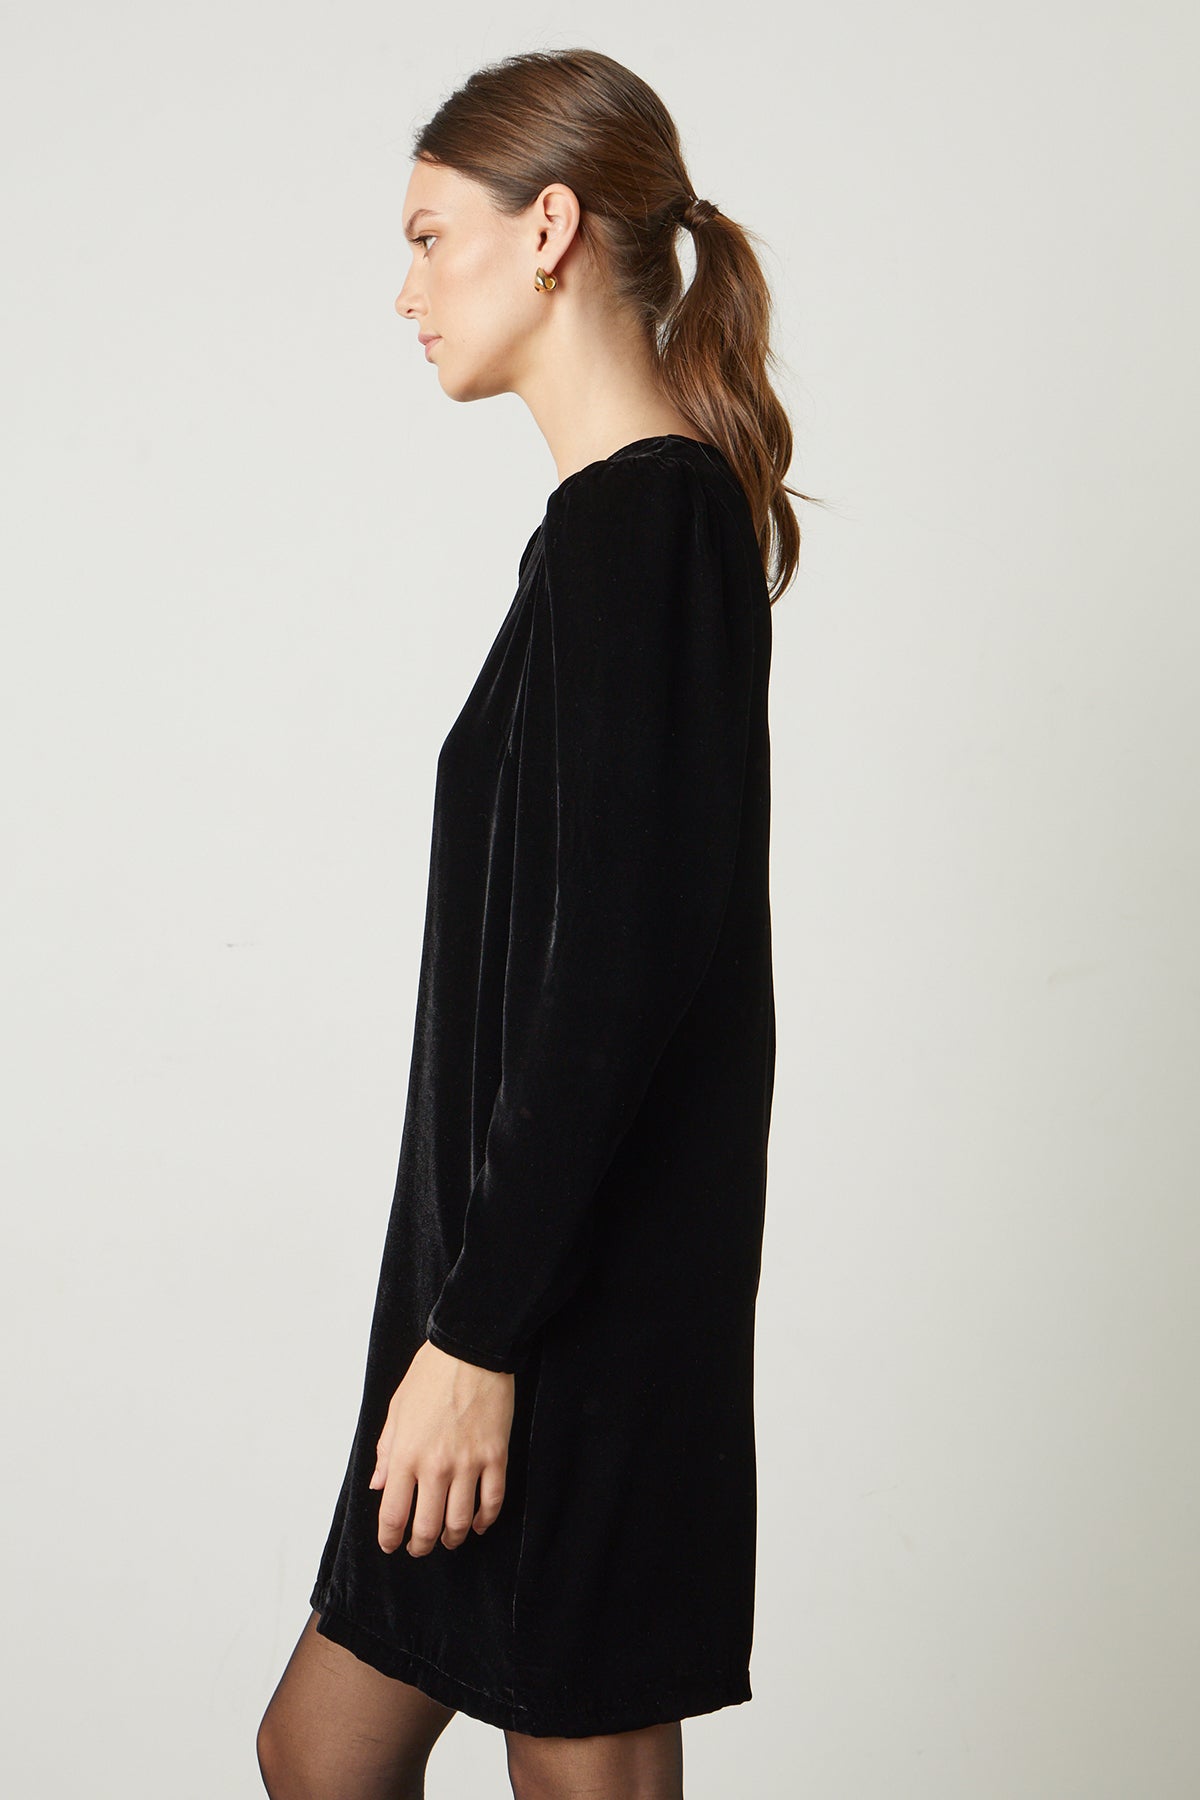 Aggie Silk Velvet Dress in black side-25668240605377